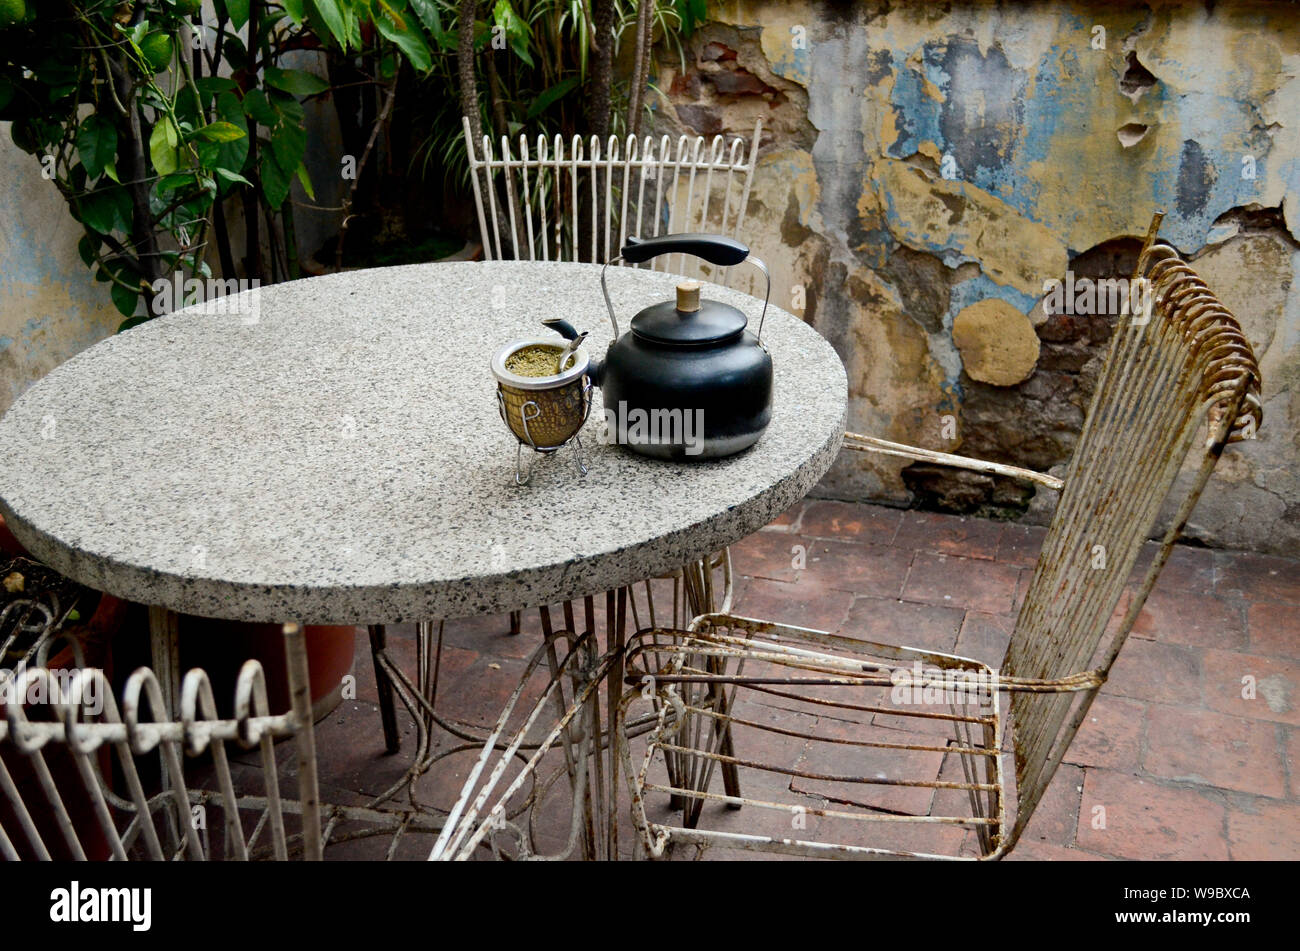 Objets anciens utilisés pour boire 'mate', coutume traditionnelle de certains pays d'Amérique du Sud Banque D'Images